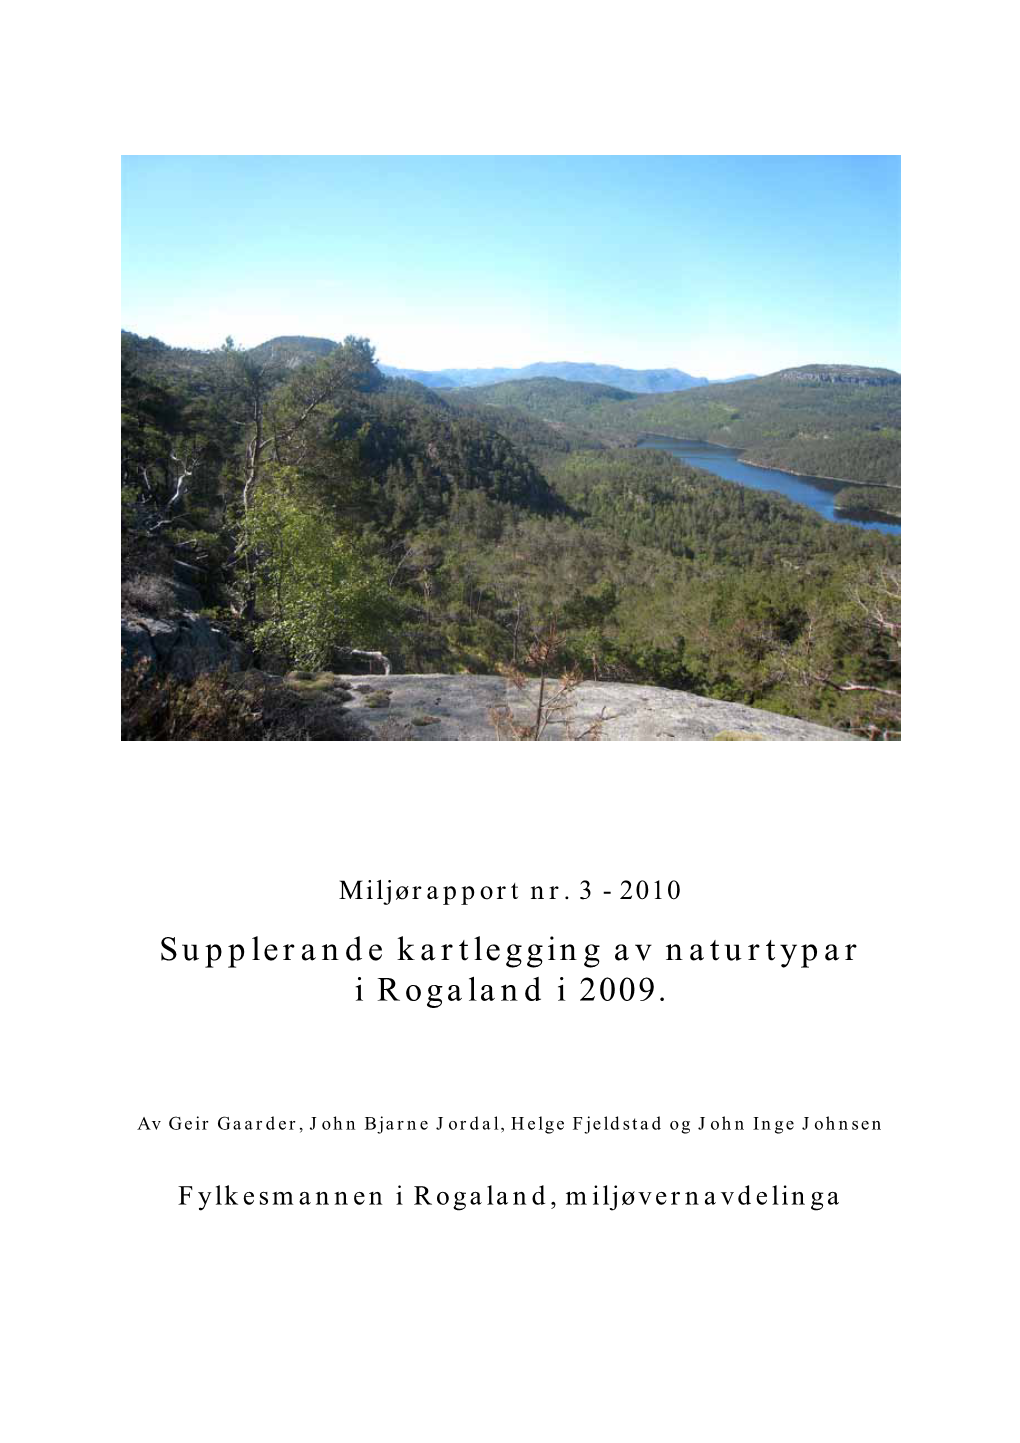 Supplerande Kartlegging Naturtypar I Rogaland 2009, Gaarder, Jordal, Johnsen Og Fjellstad, Miljørapport 3-2010